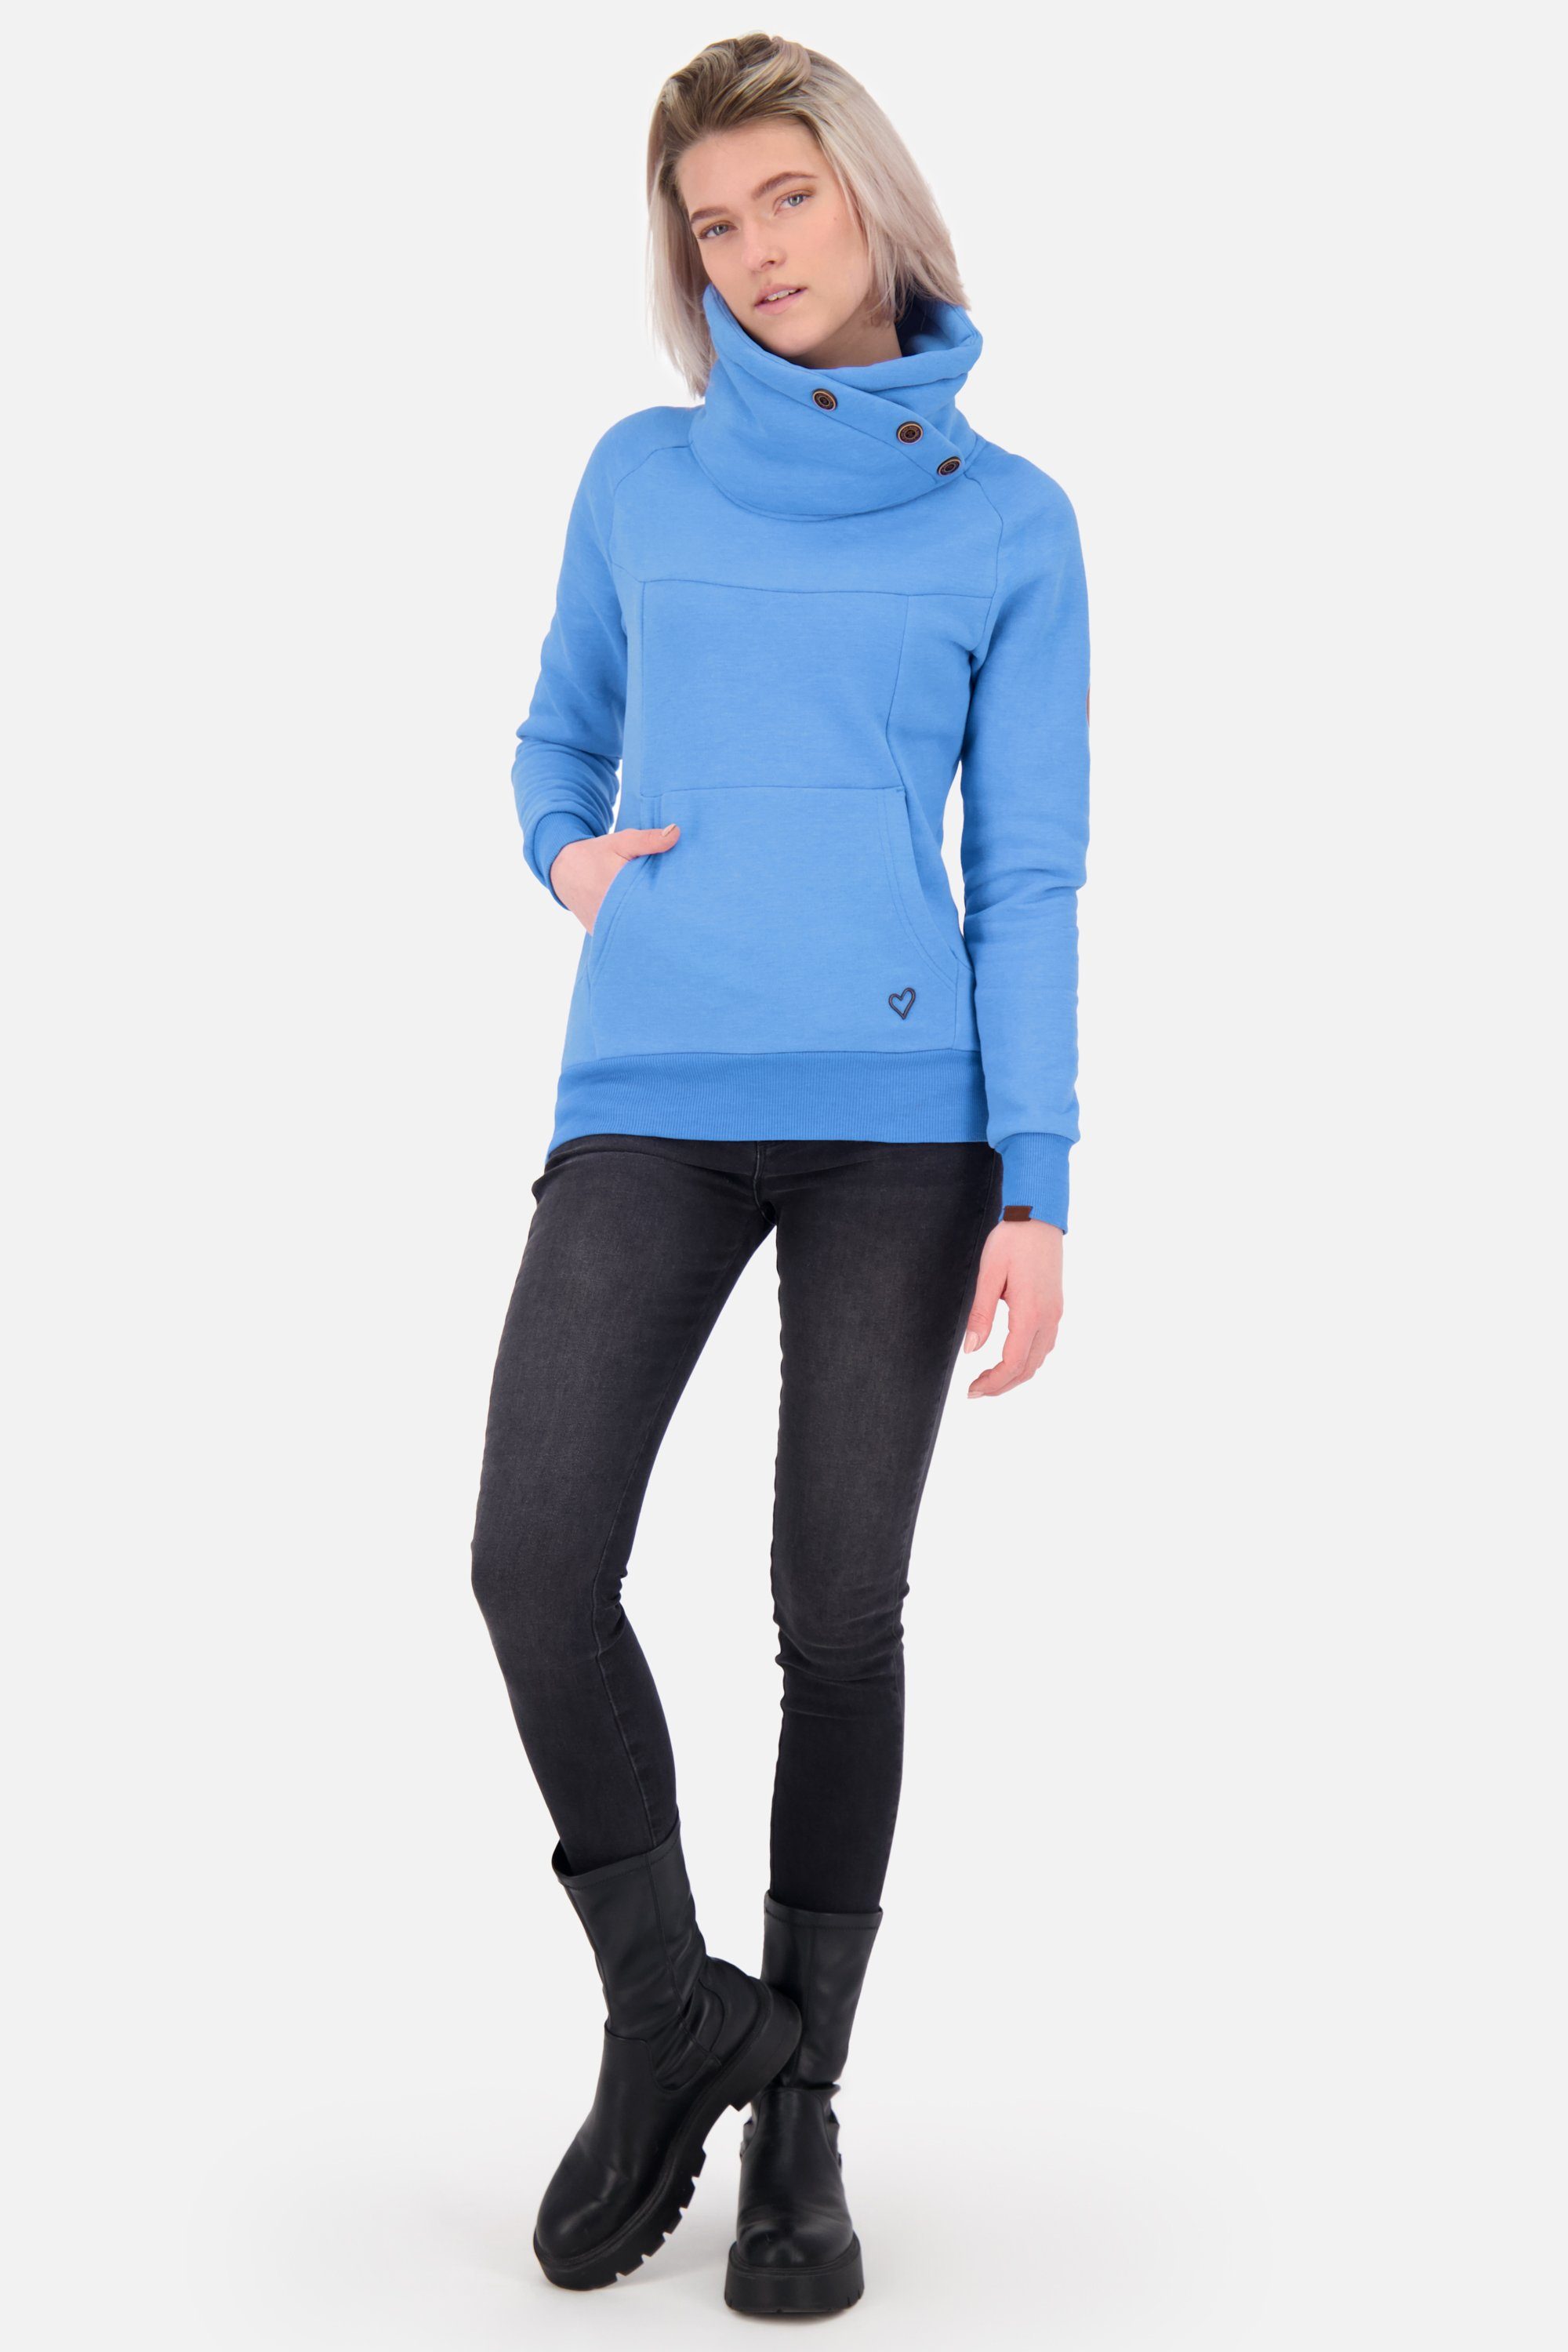 Alife & Kickin Sweatshirt VioletAK Sweatshirt Pullover azure A melange Damen Rundhalspullover